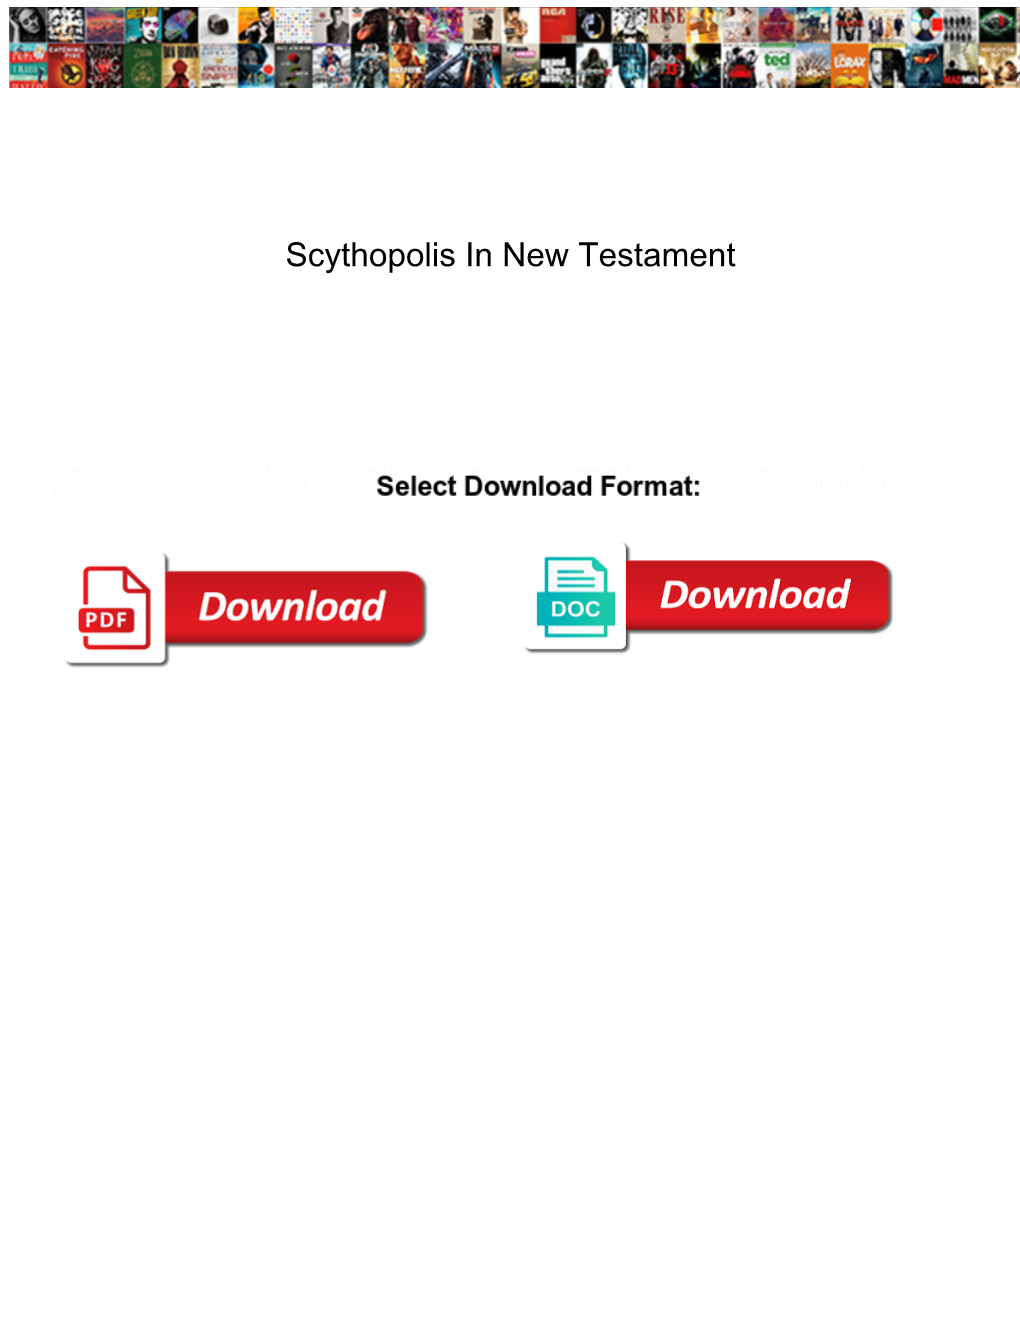 Scythopolis in New Testament